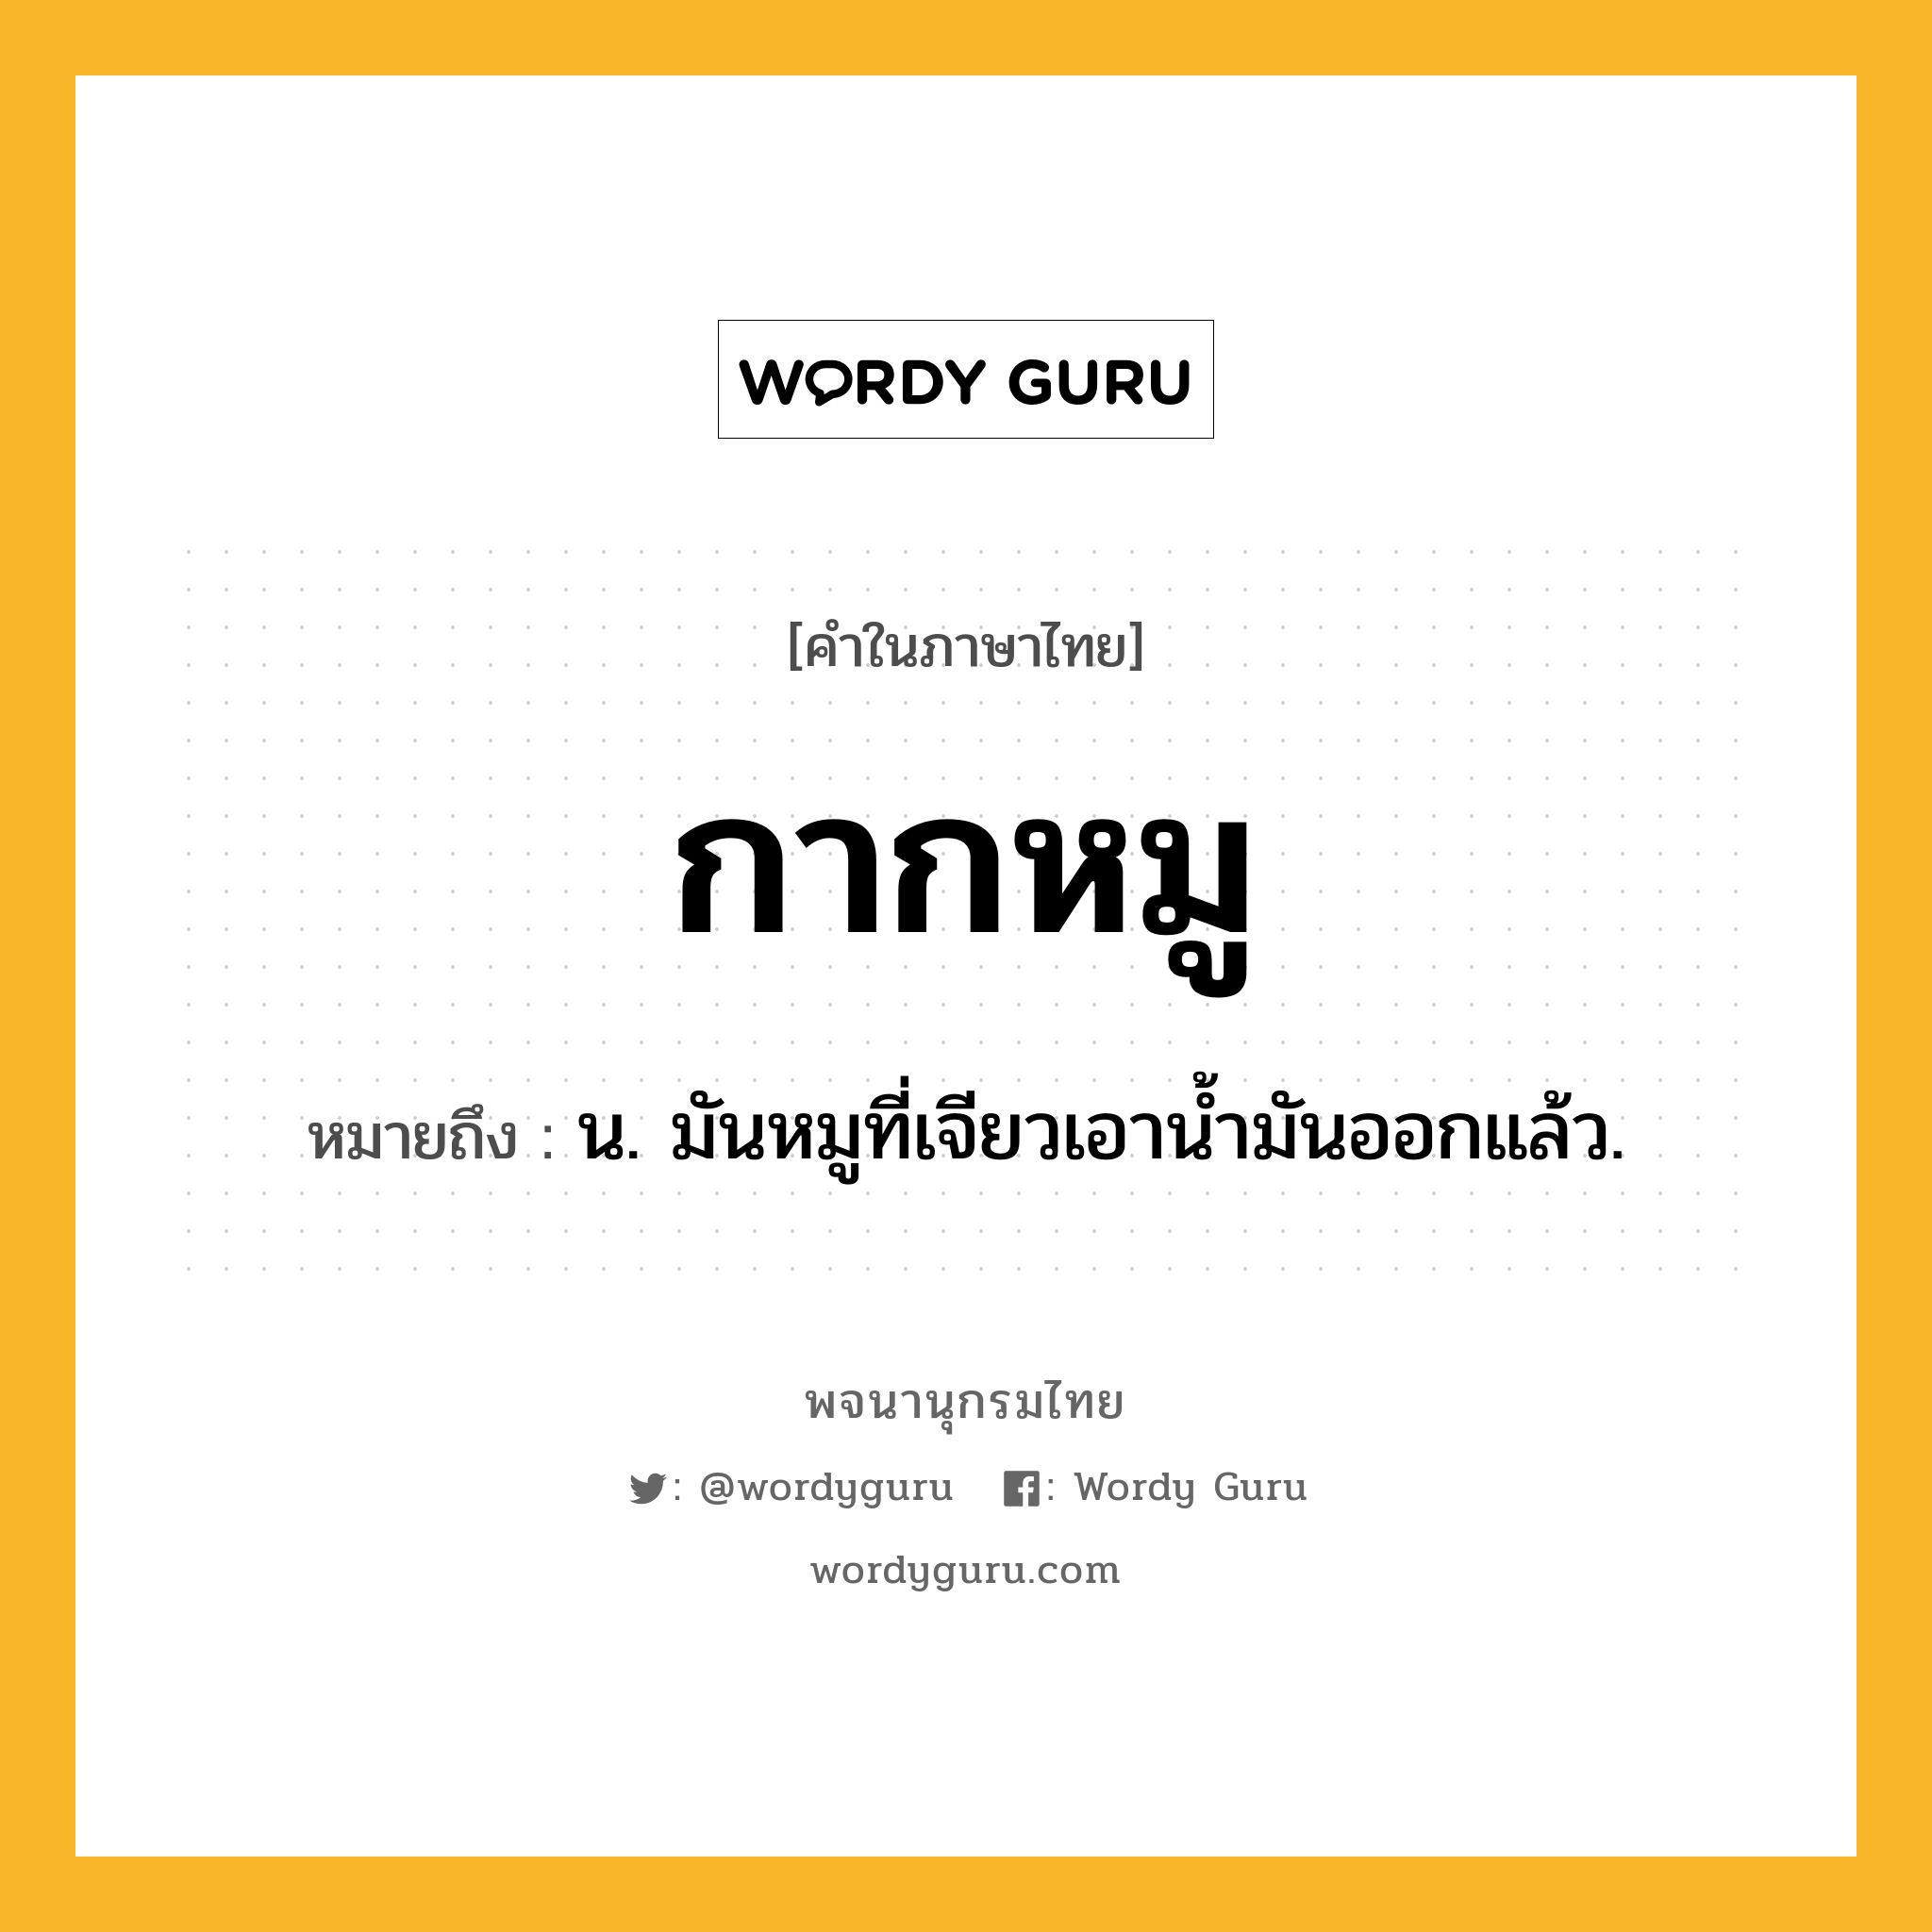 กากหมู หมายถึงอะไร?, คำในภาษาไทย กากหมู หมายถึง น. มันหมูที่เจียวเอานํ้ามันออกแล้ว.